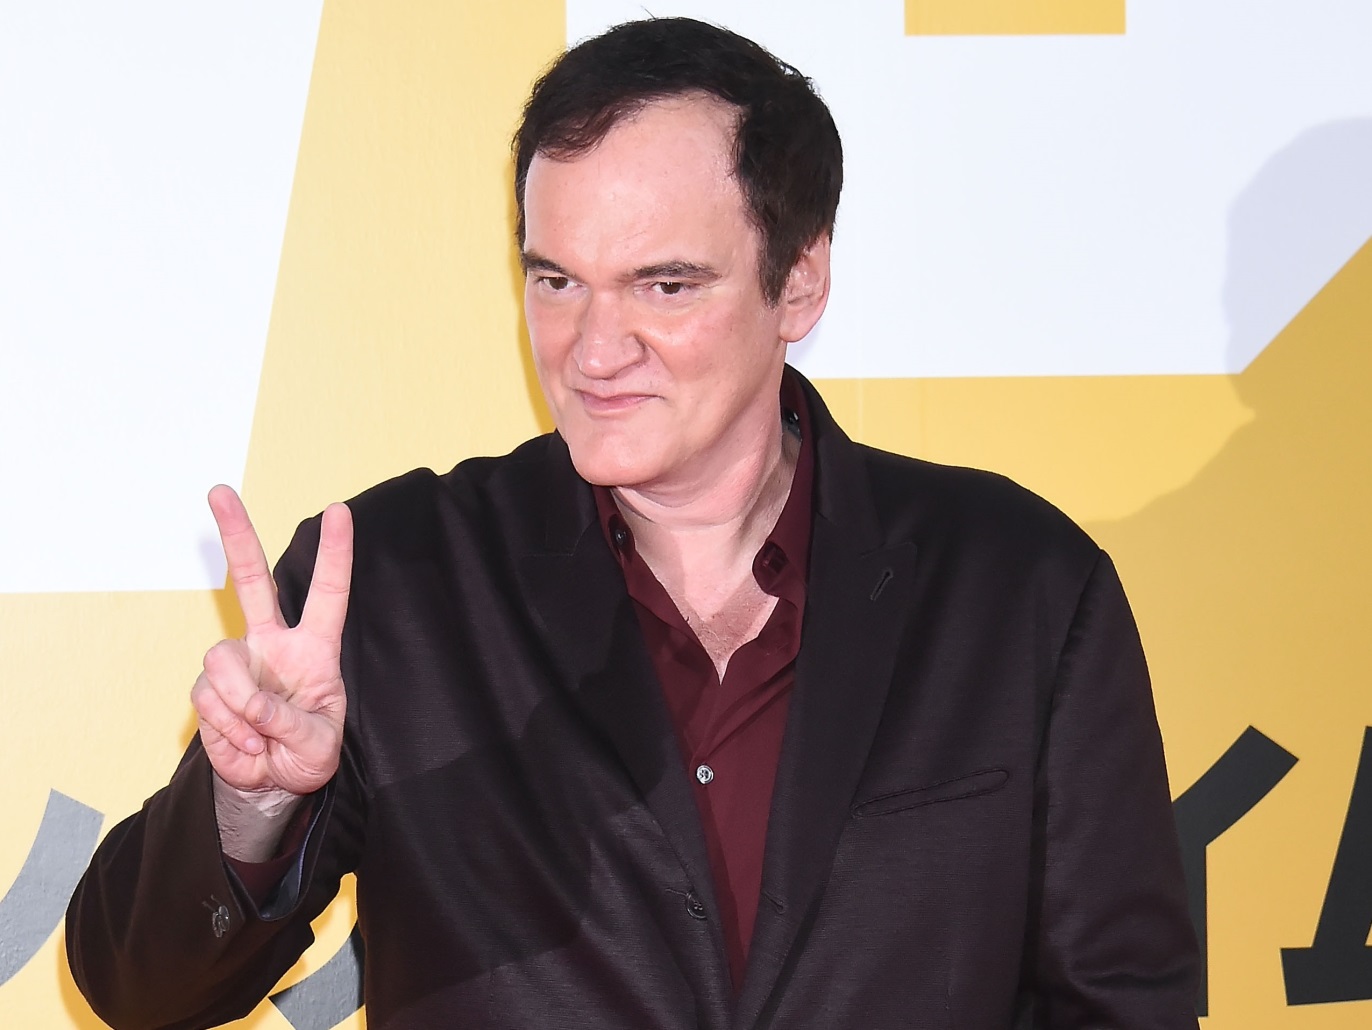 Fin avant le début - Tarantino abandonne son film sur un critique cinéma